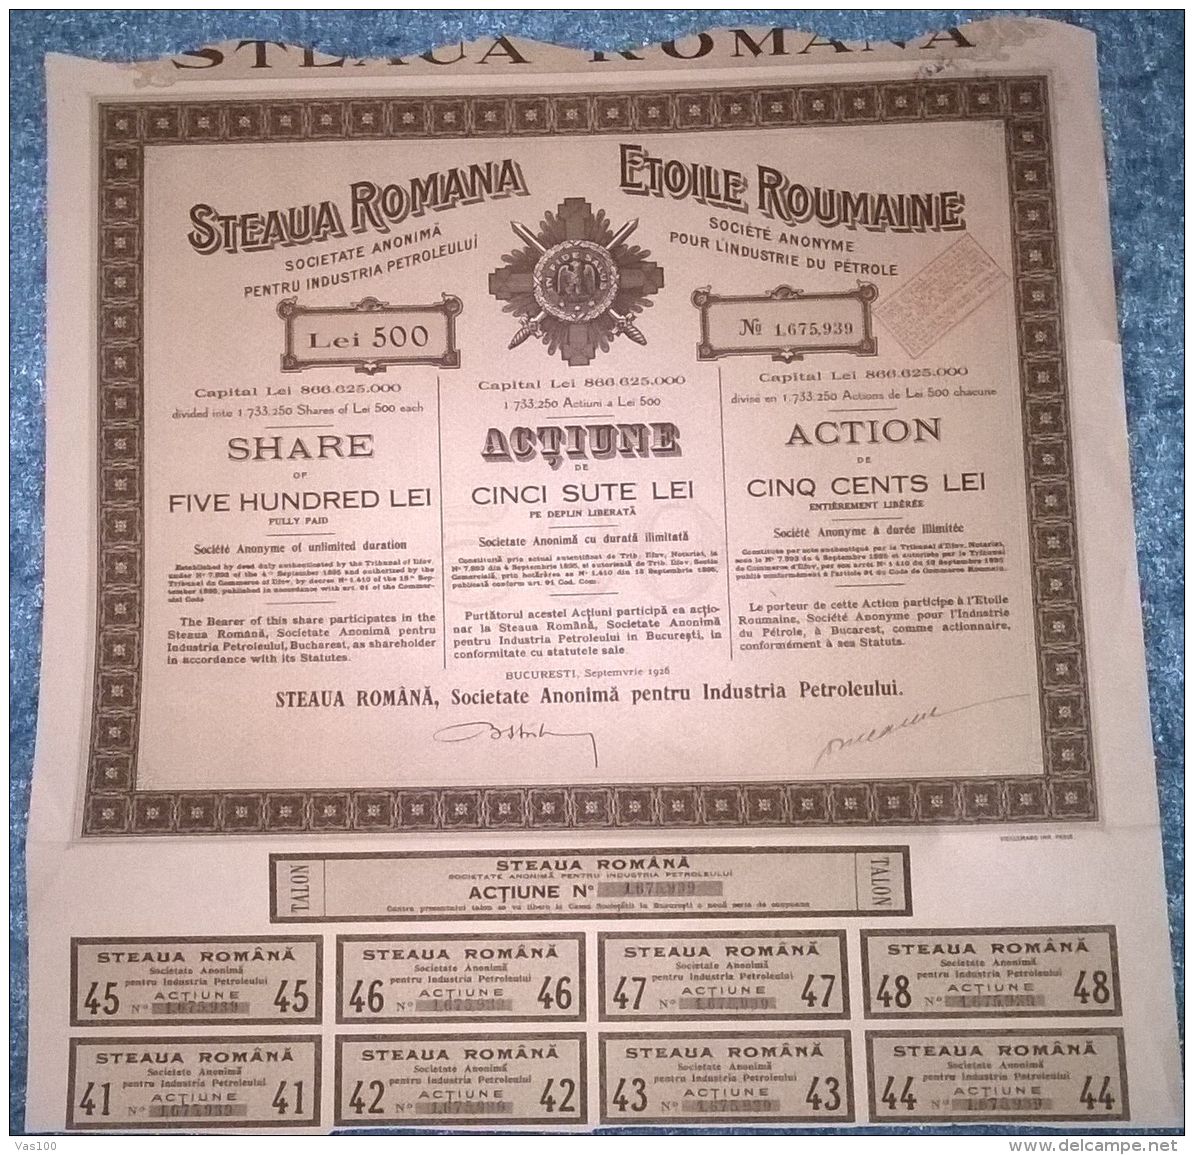 STEAUA ROMANA OIL COMPANY, SHARES, STOCK, REVENUE COUPONS, 1926, ROMANIA - Oil